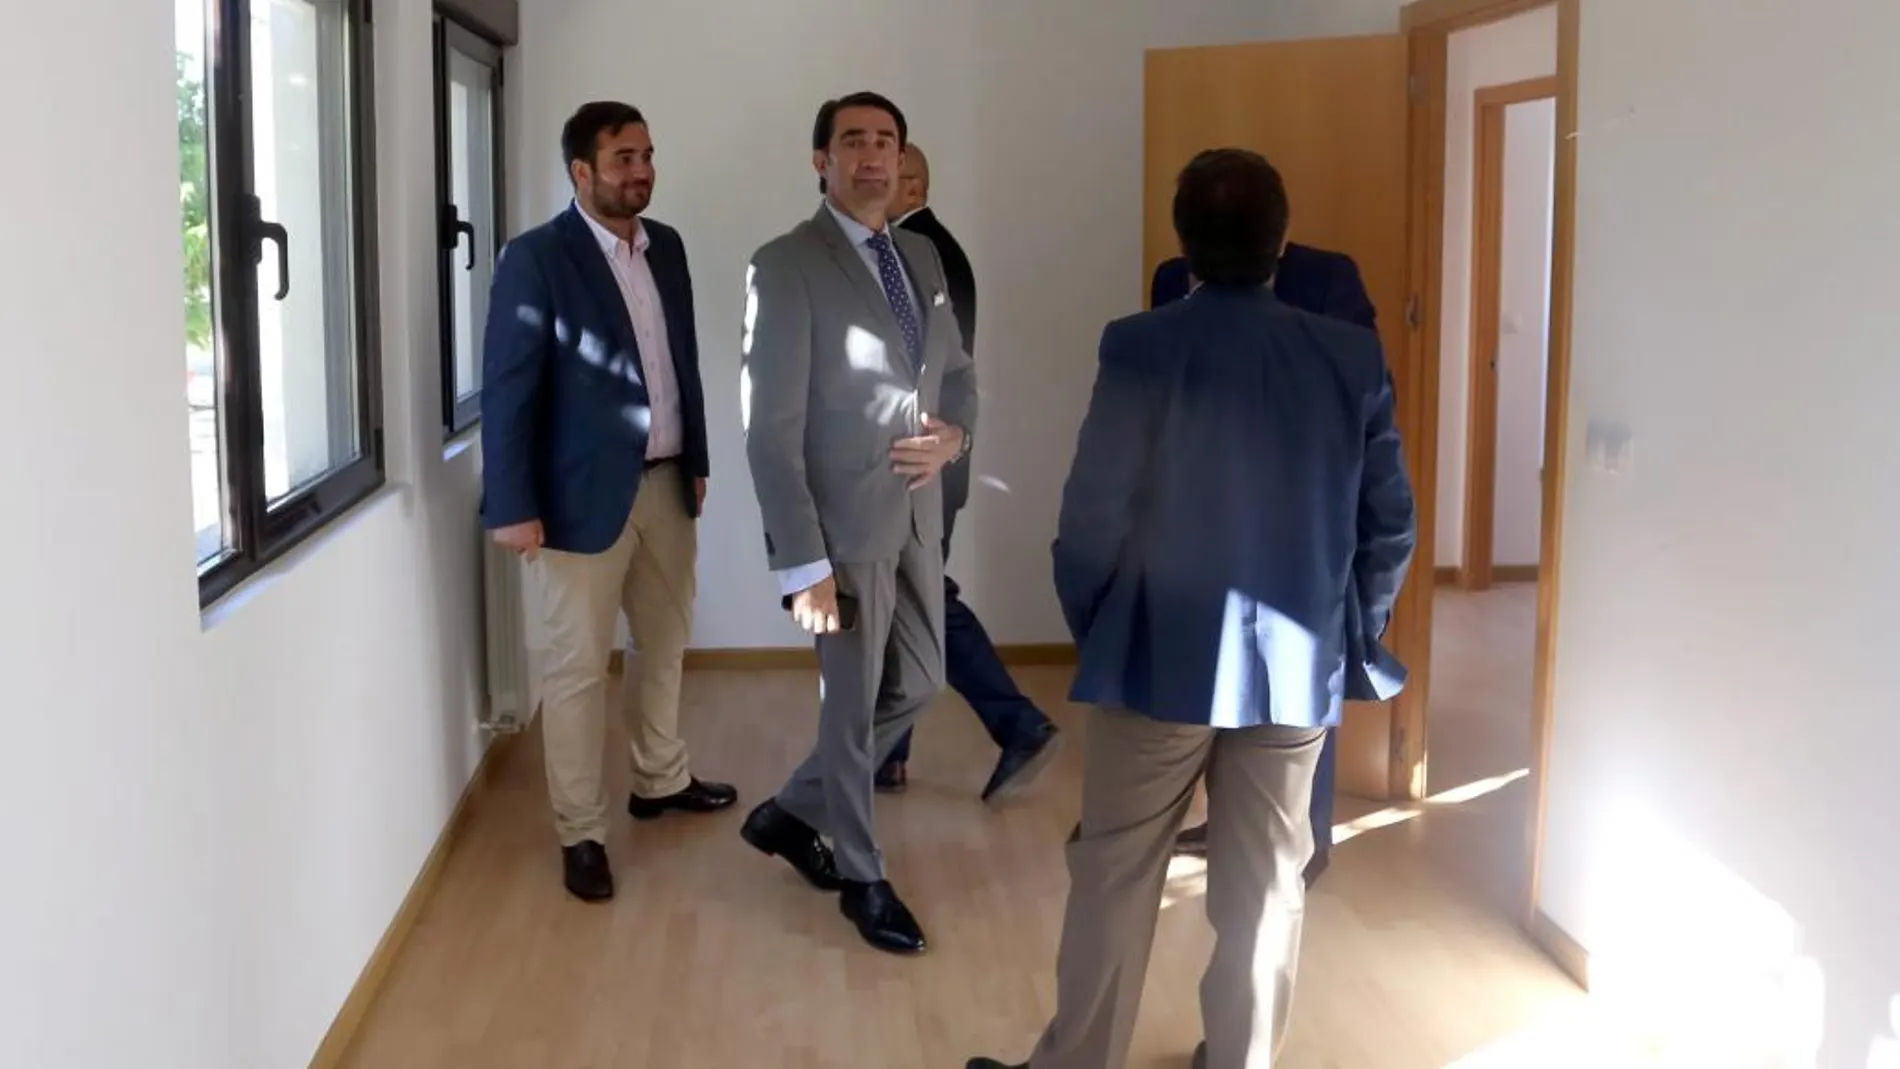 El consejero Suárez-Qiñones junto al alcalde de Villalón, Jose Ángel Alonso, visita al inmueble rehabilitado